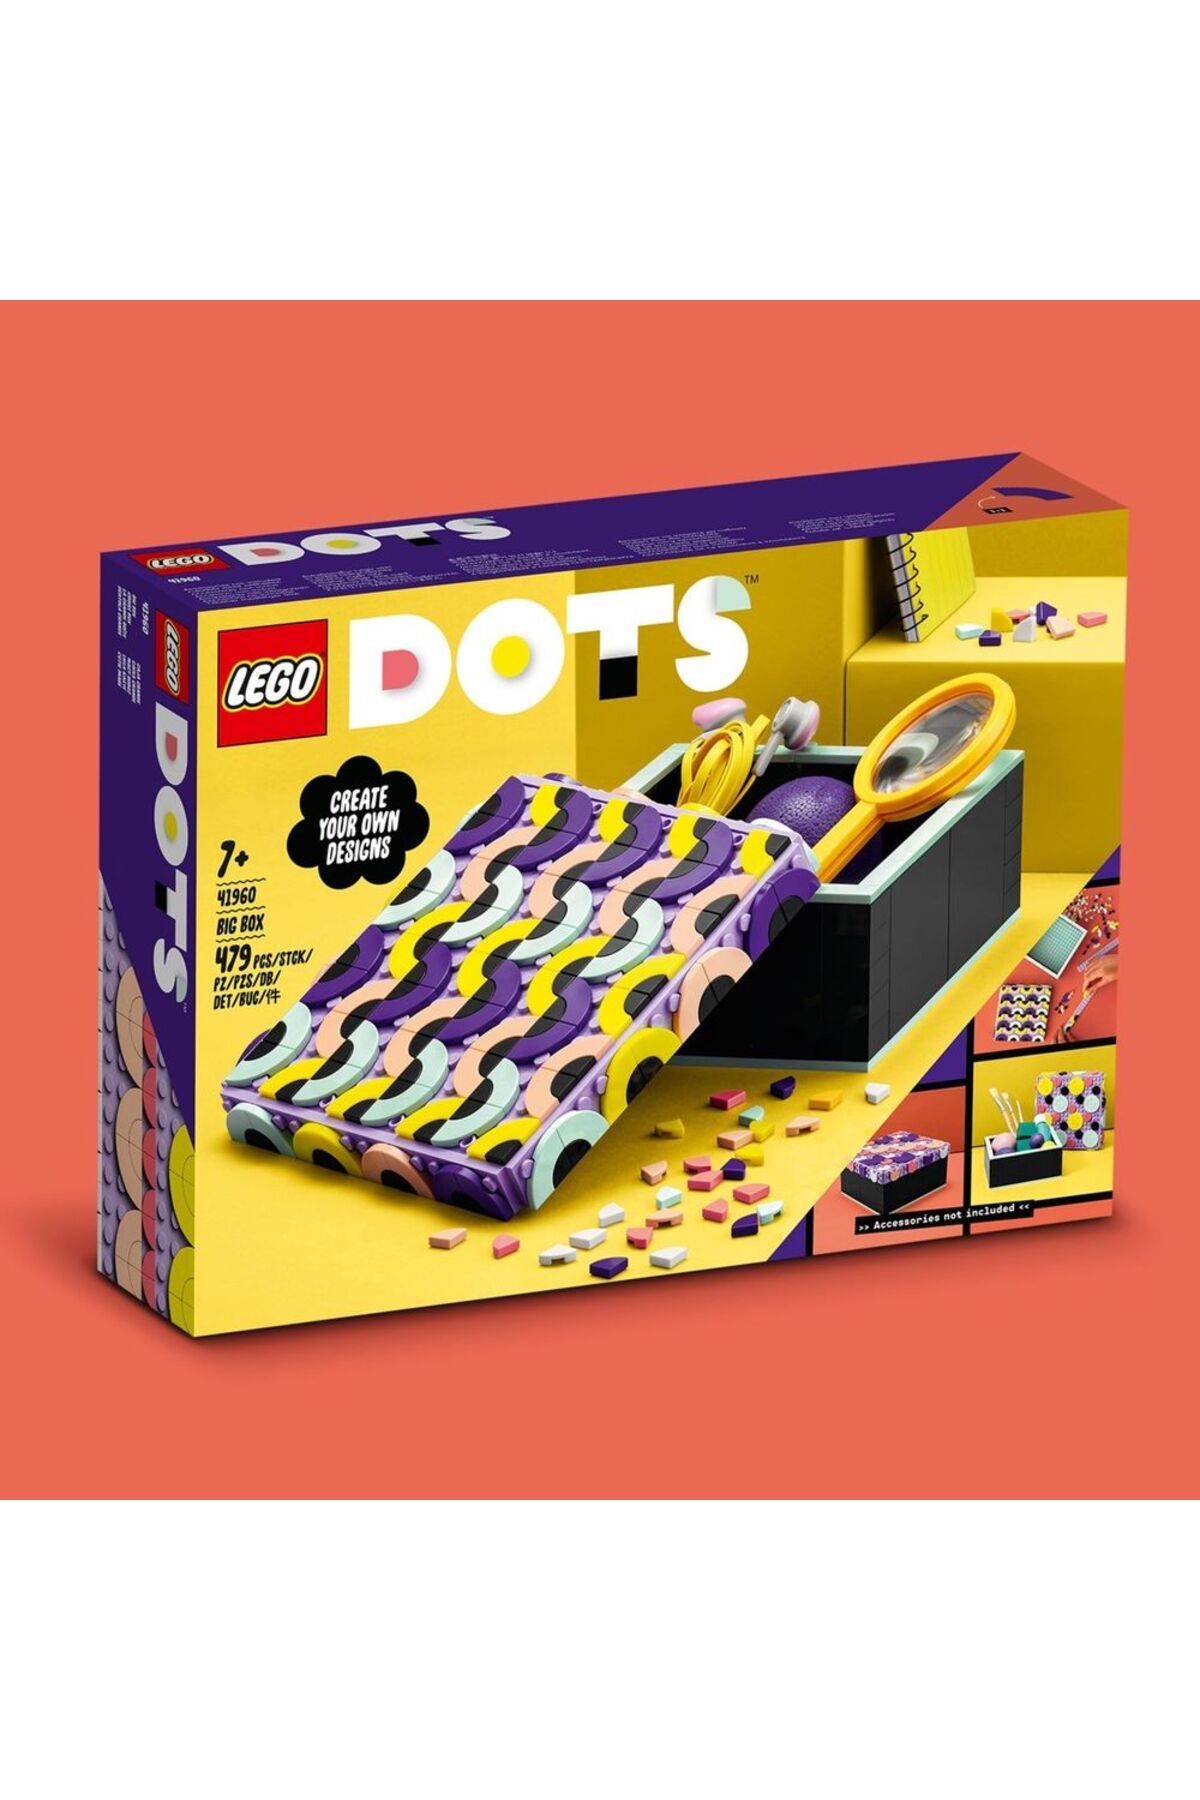 LEGO جعبه زینتی 41960 DIY